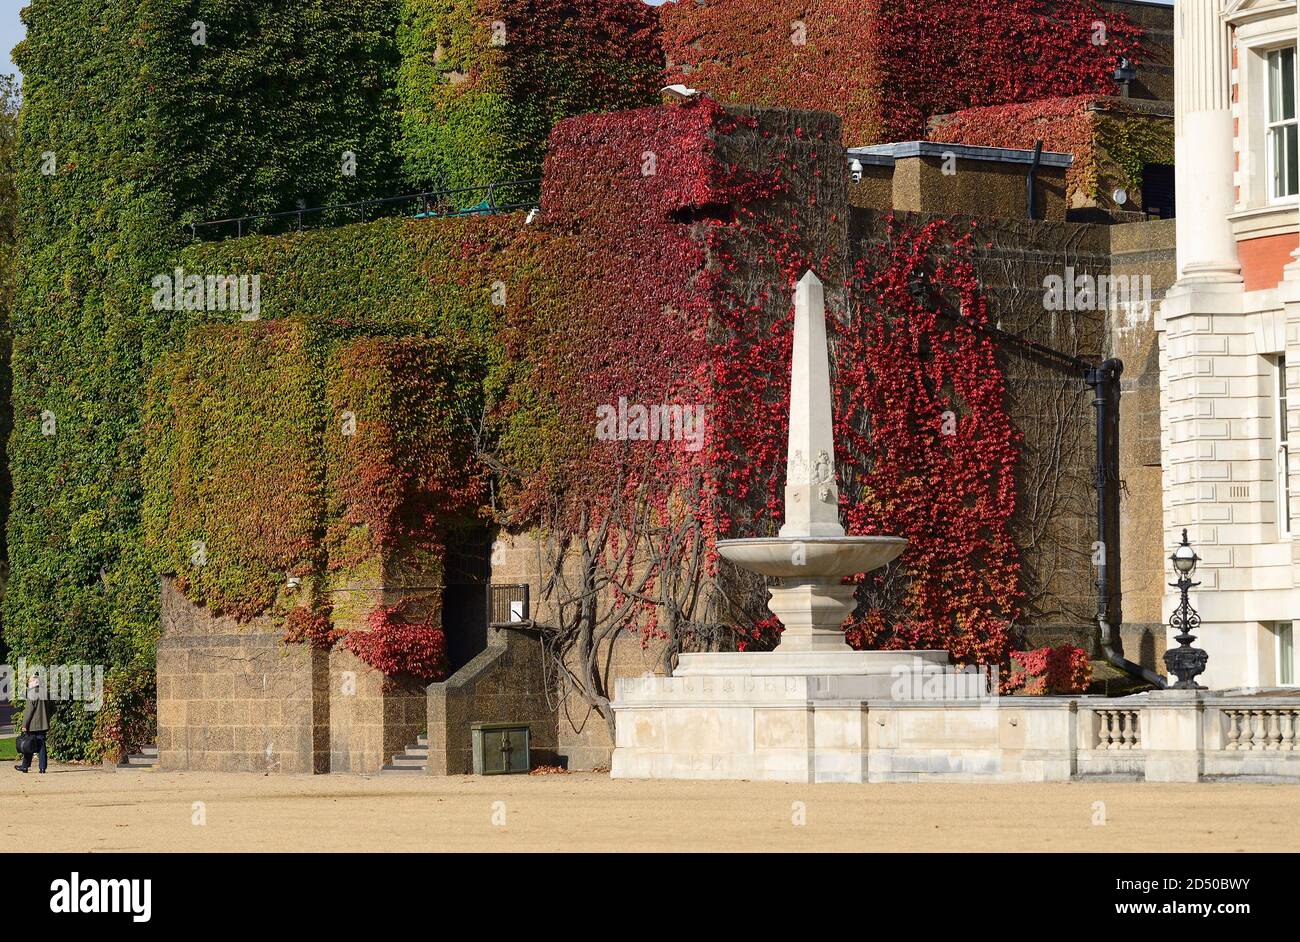 Londra, Inghilterra, Regno Unito. Horse Guards Parade - Virginia Creeper (Parthenocissus quinquefolia) cambia colore all'arrivo dell'autunno - inizio di ottobre 2020. Reale Foto Stock